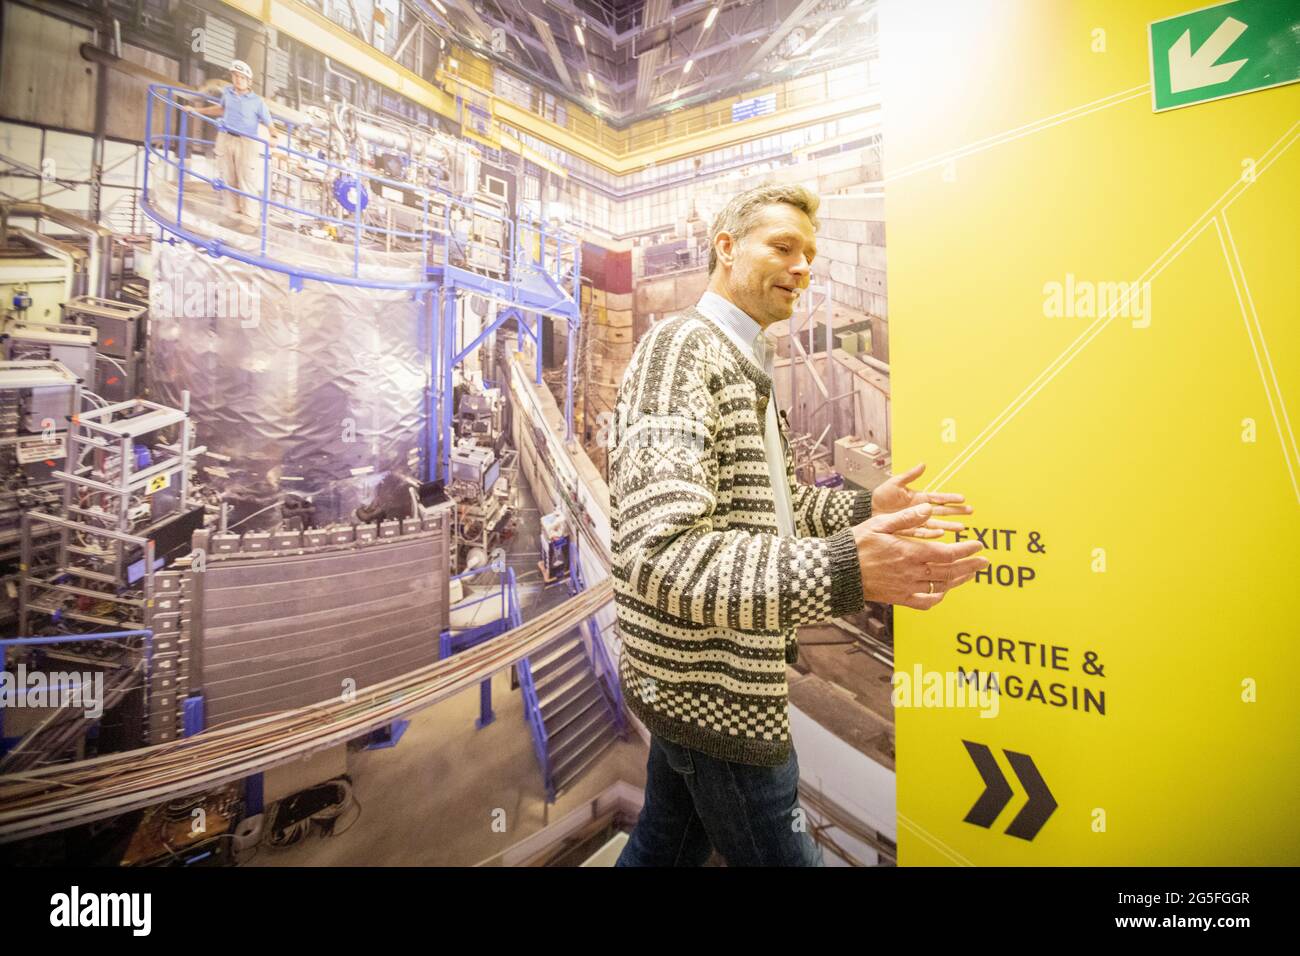 Direttore bibliotecario al CERN, norvegese Jens Vigen, spiega l'affascinante calendario che ha portato il centro di ricerca ad oggi. Gli scienziati e gli ingegneri del CERN si stanno preparando per il prossimo grande capitolo della storia del più grande laboratorio di ricerca del mondo. Sono in corso piani per costruire un altro collider di particelle quattro volte più grande dell'esistente LHC - Large Hadron Collider. Foto Stock